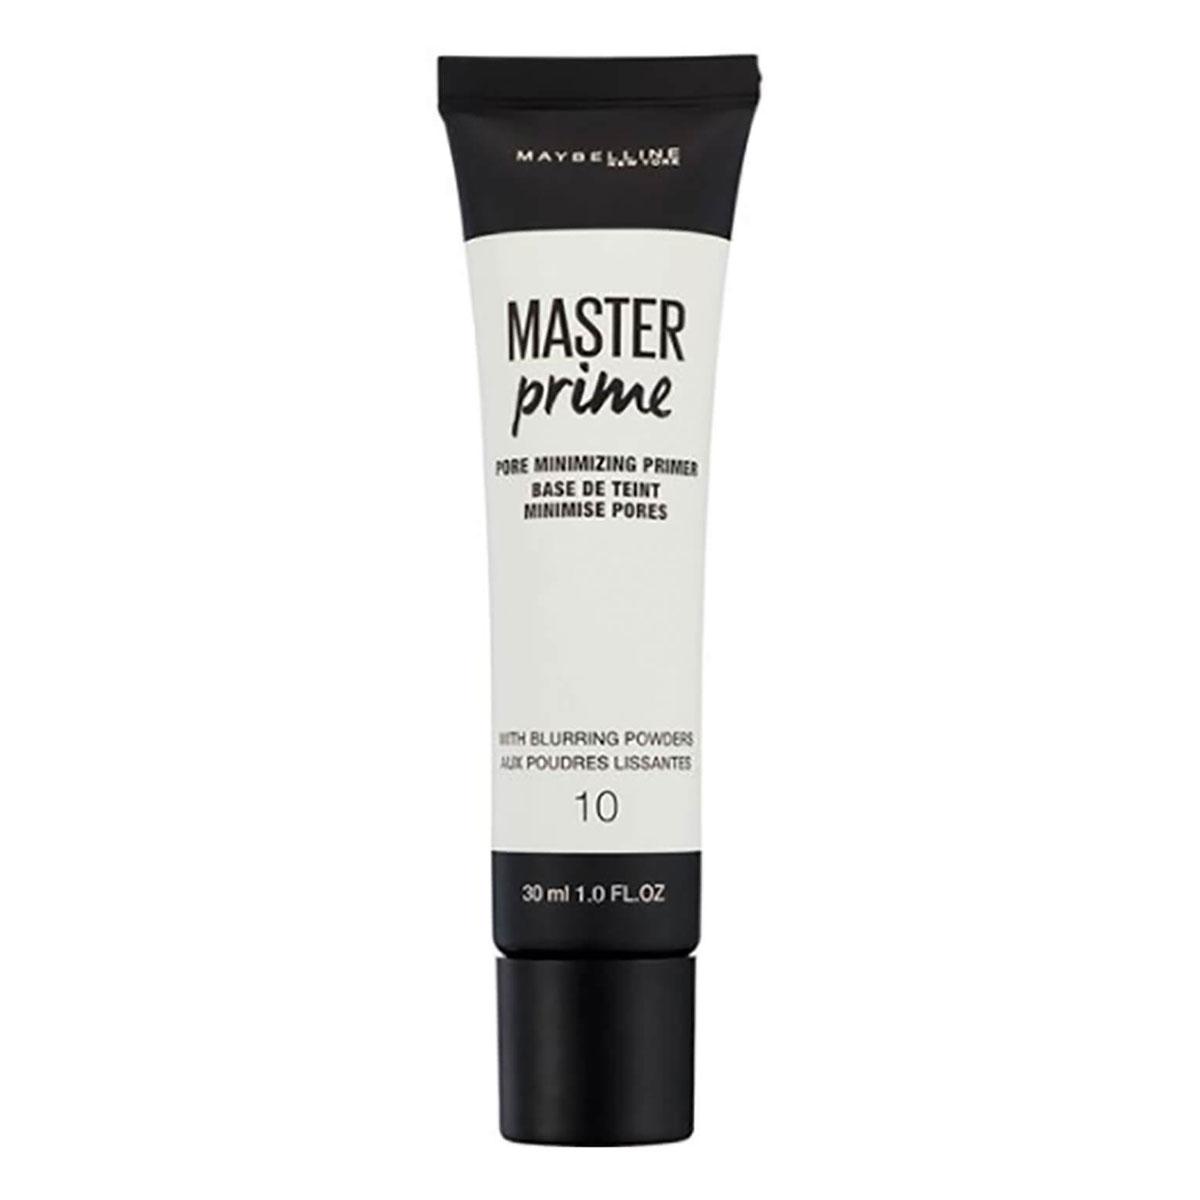 پرایمر مستر پرایم  -  Master Prime Pore Minimizing  